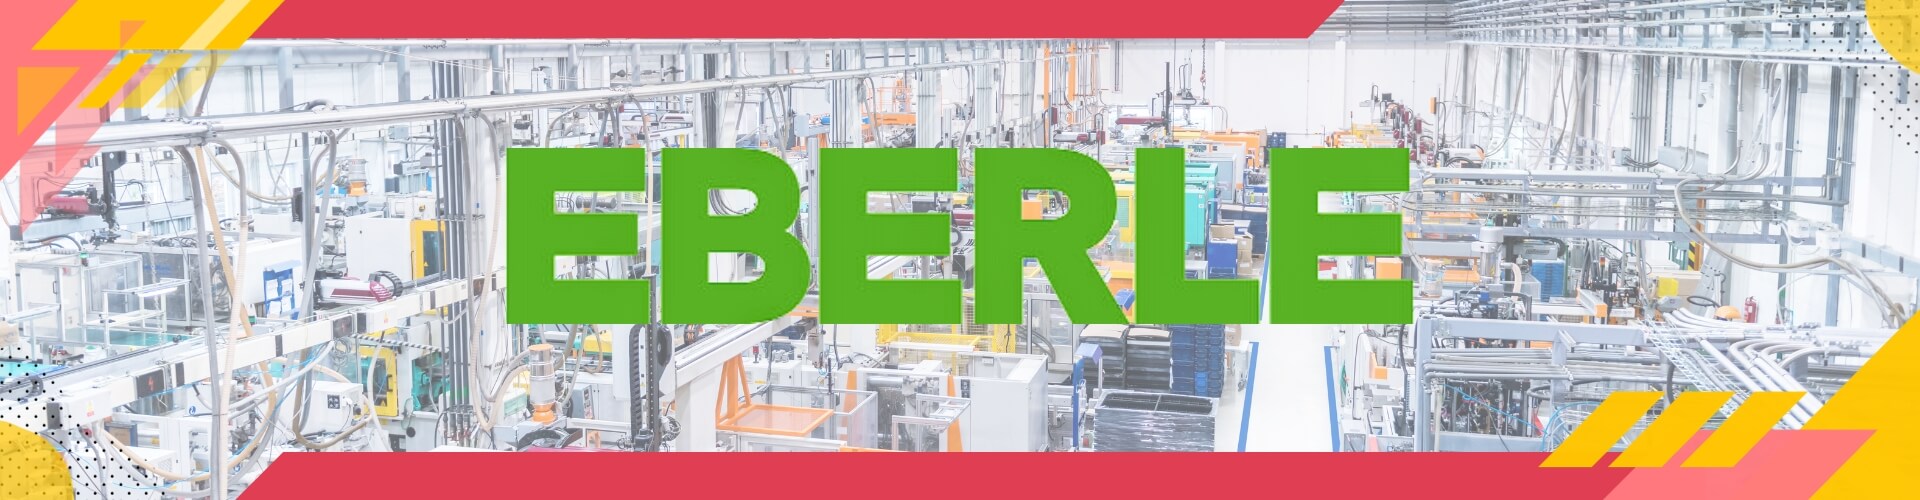 Elektroheizung Regelungstechnik vom Hersteller Eberle